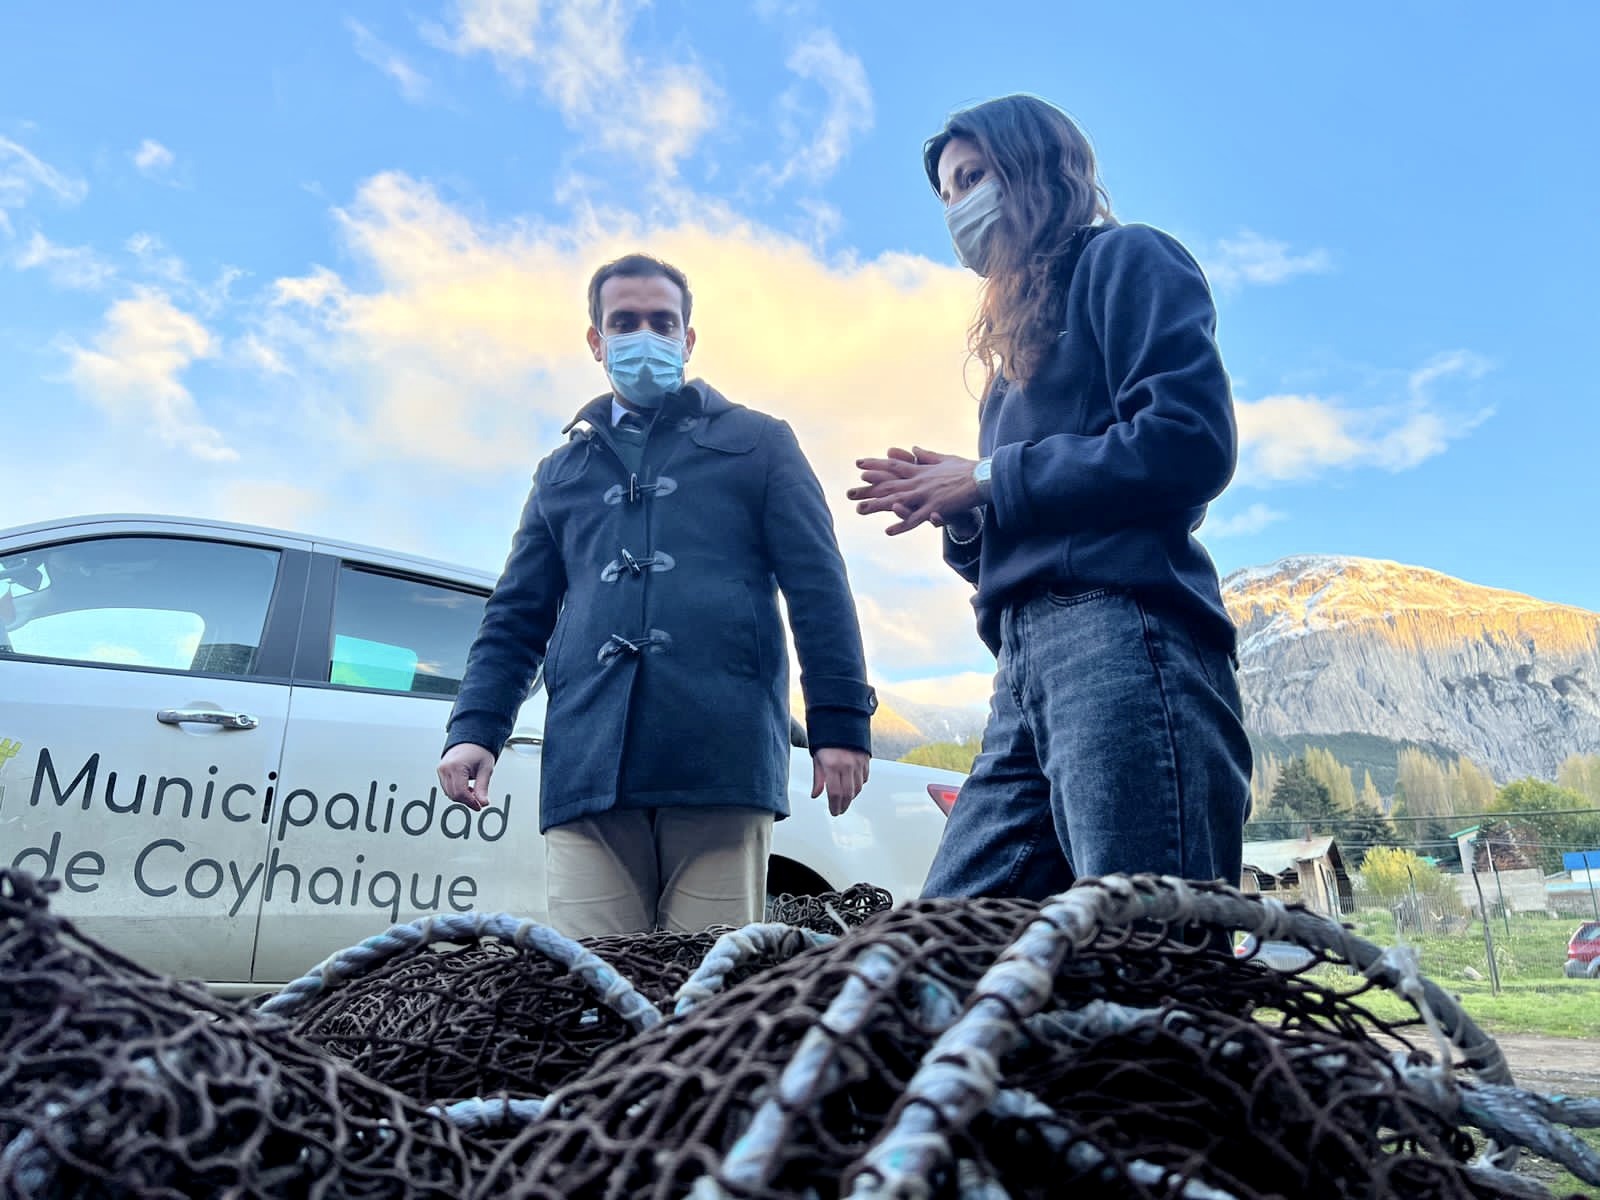 AquaChile y Municipalidad de Coyhaique concretan iniciativa de manejo de residuos domiciliarios